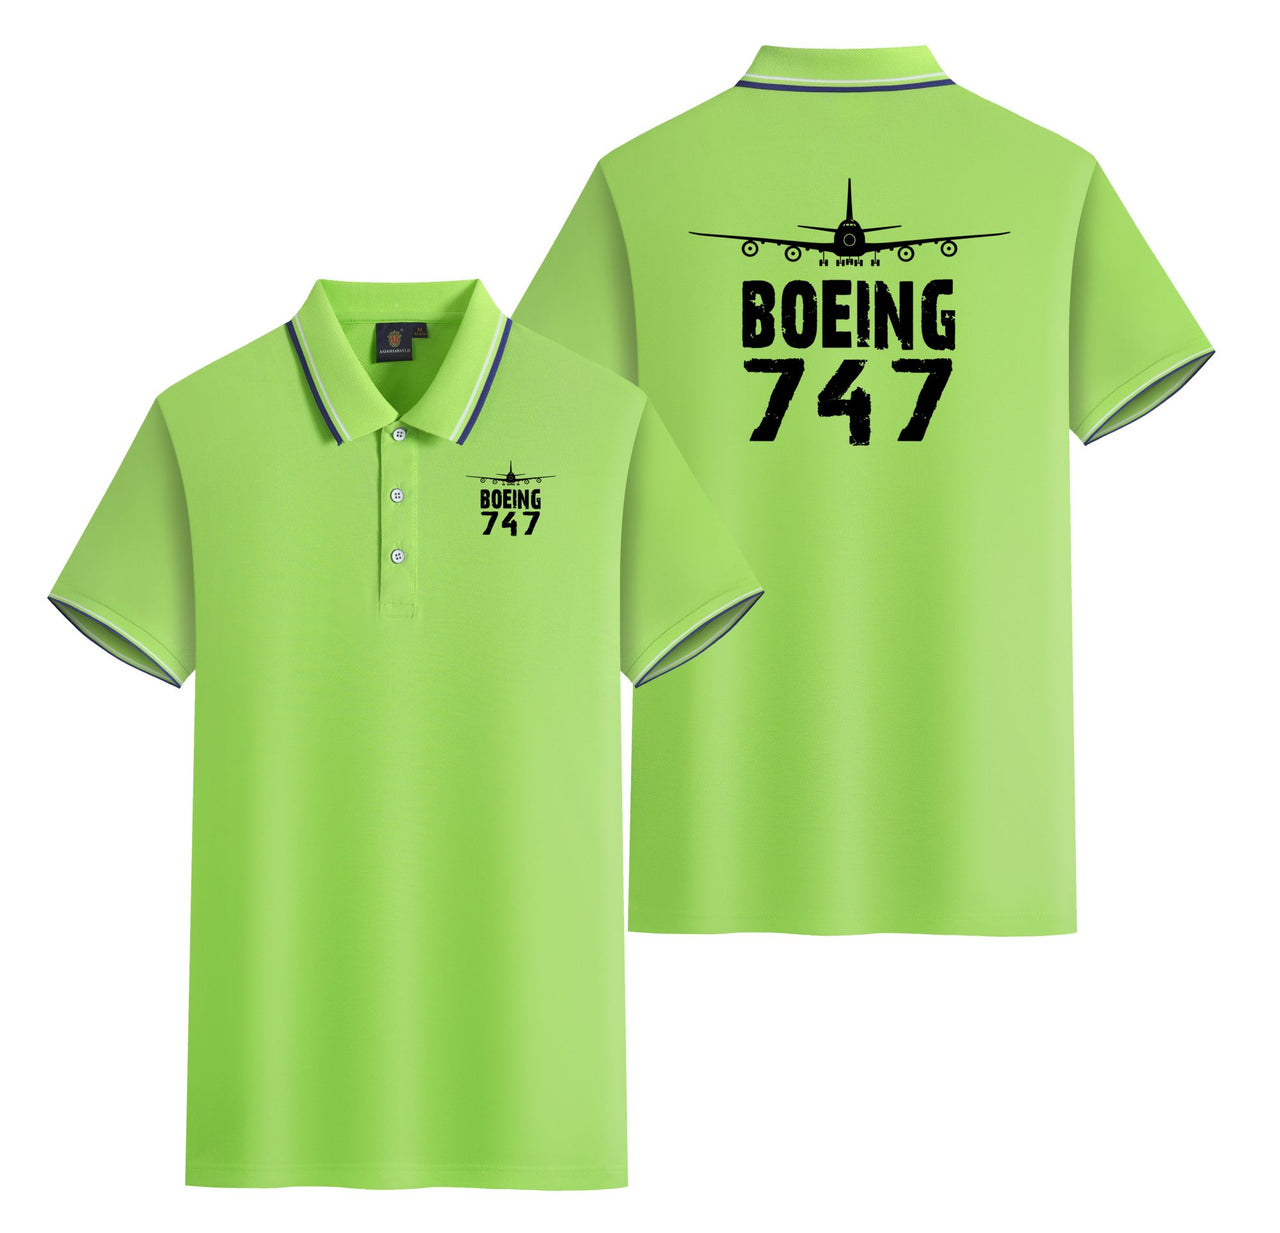 Boeing 747 & Plane Designed Stylish Polo T-Shirts (Double-Side)